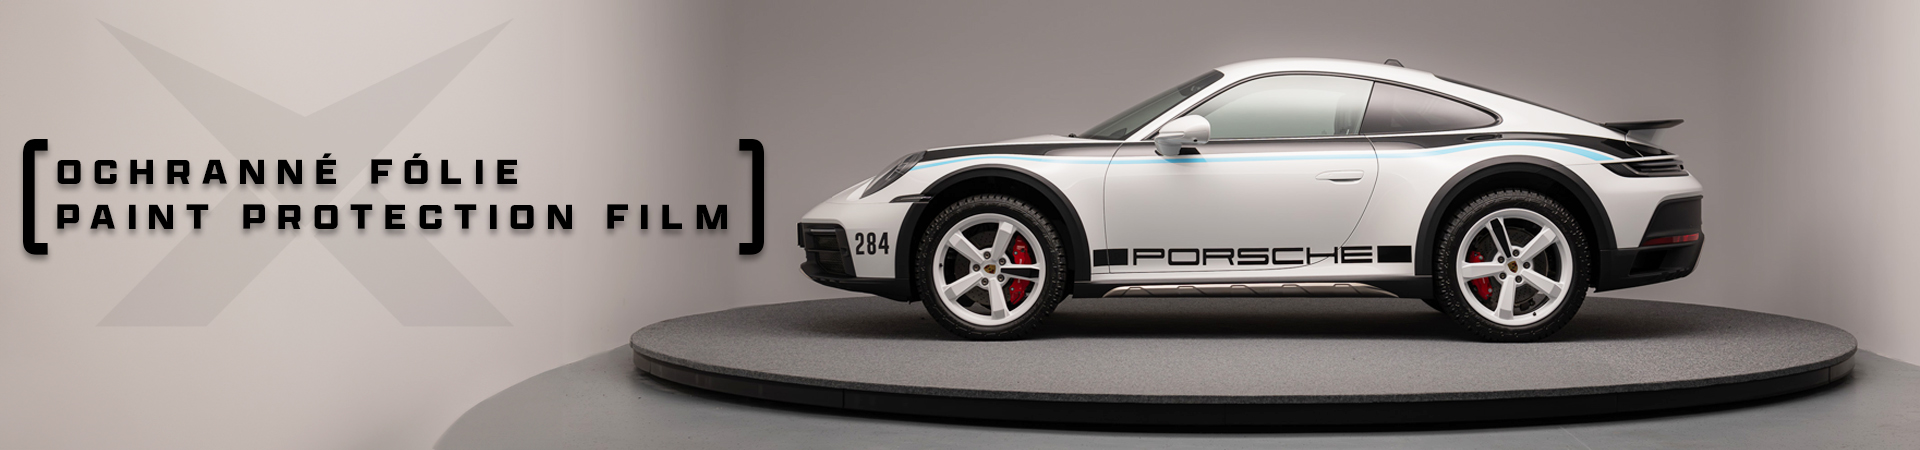 PPF_Porsche_Dakar_celopolep.jpg